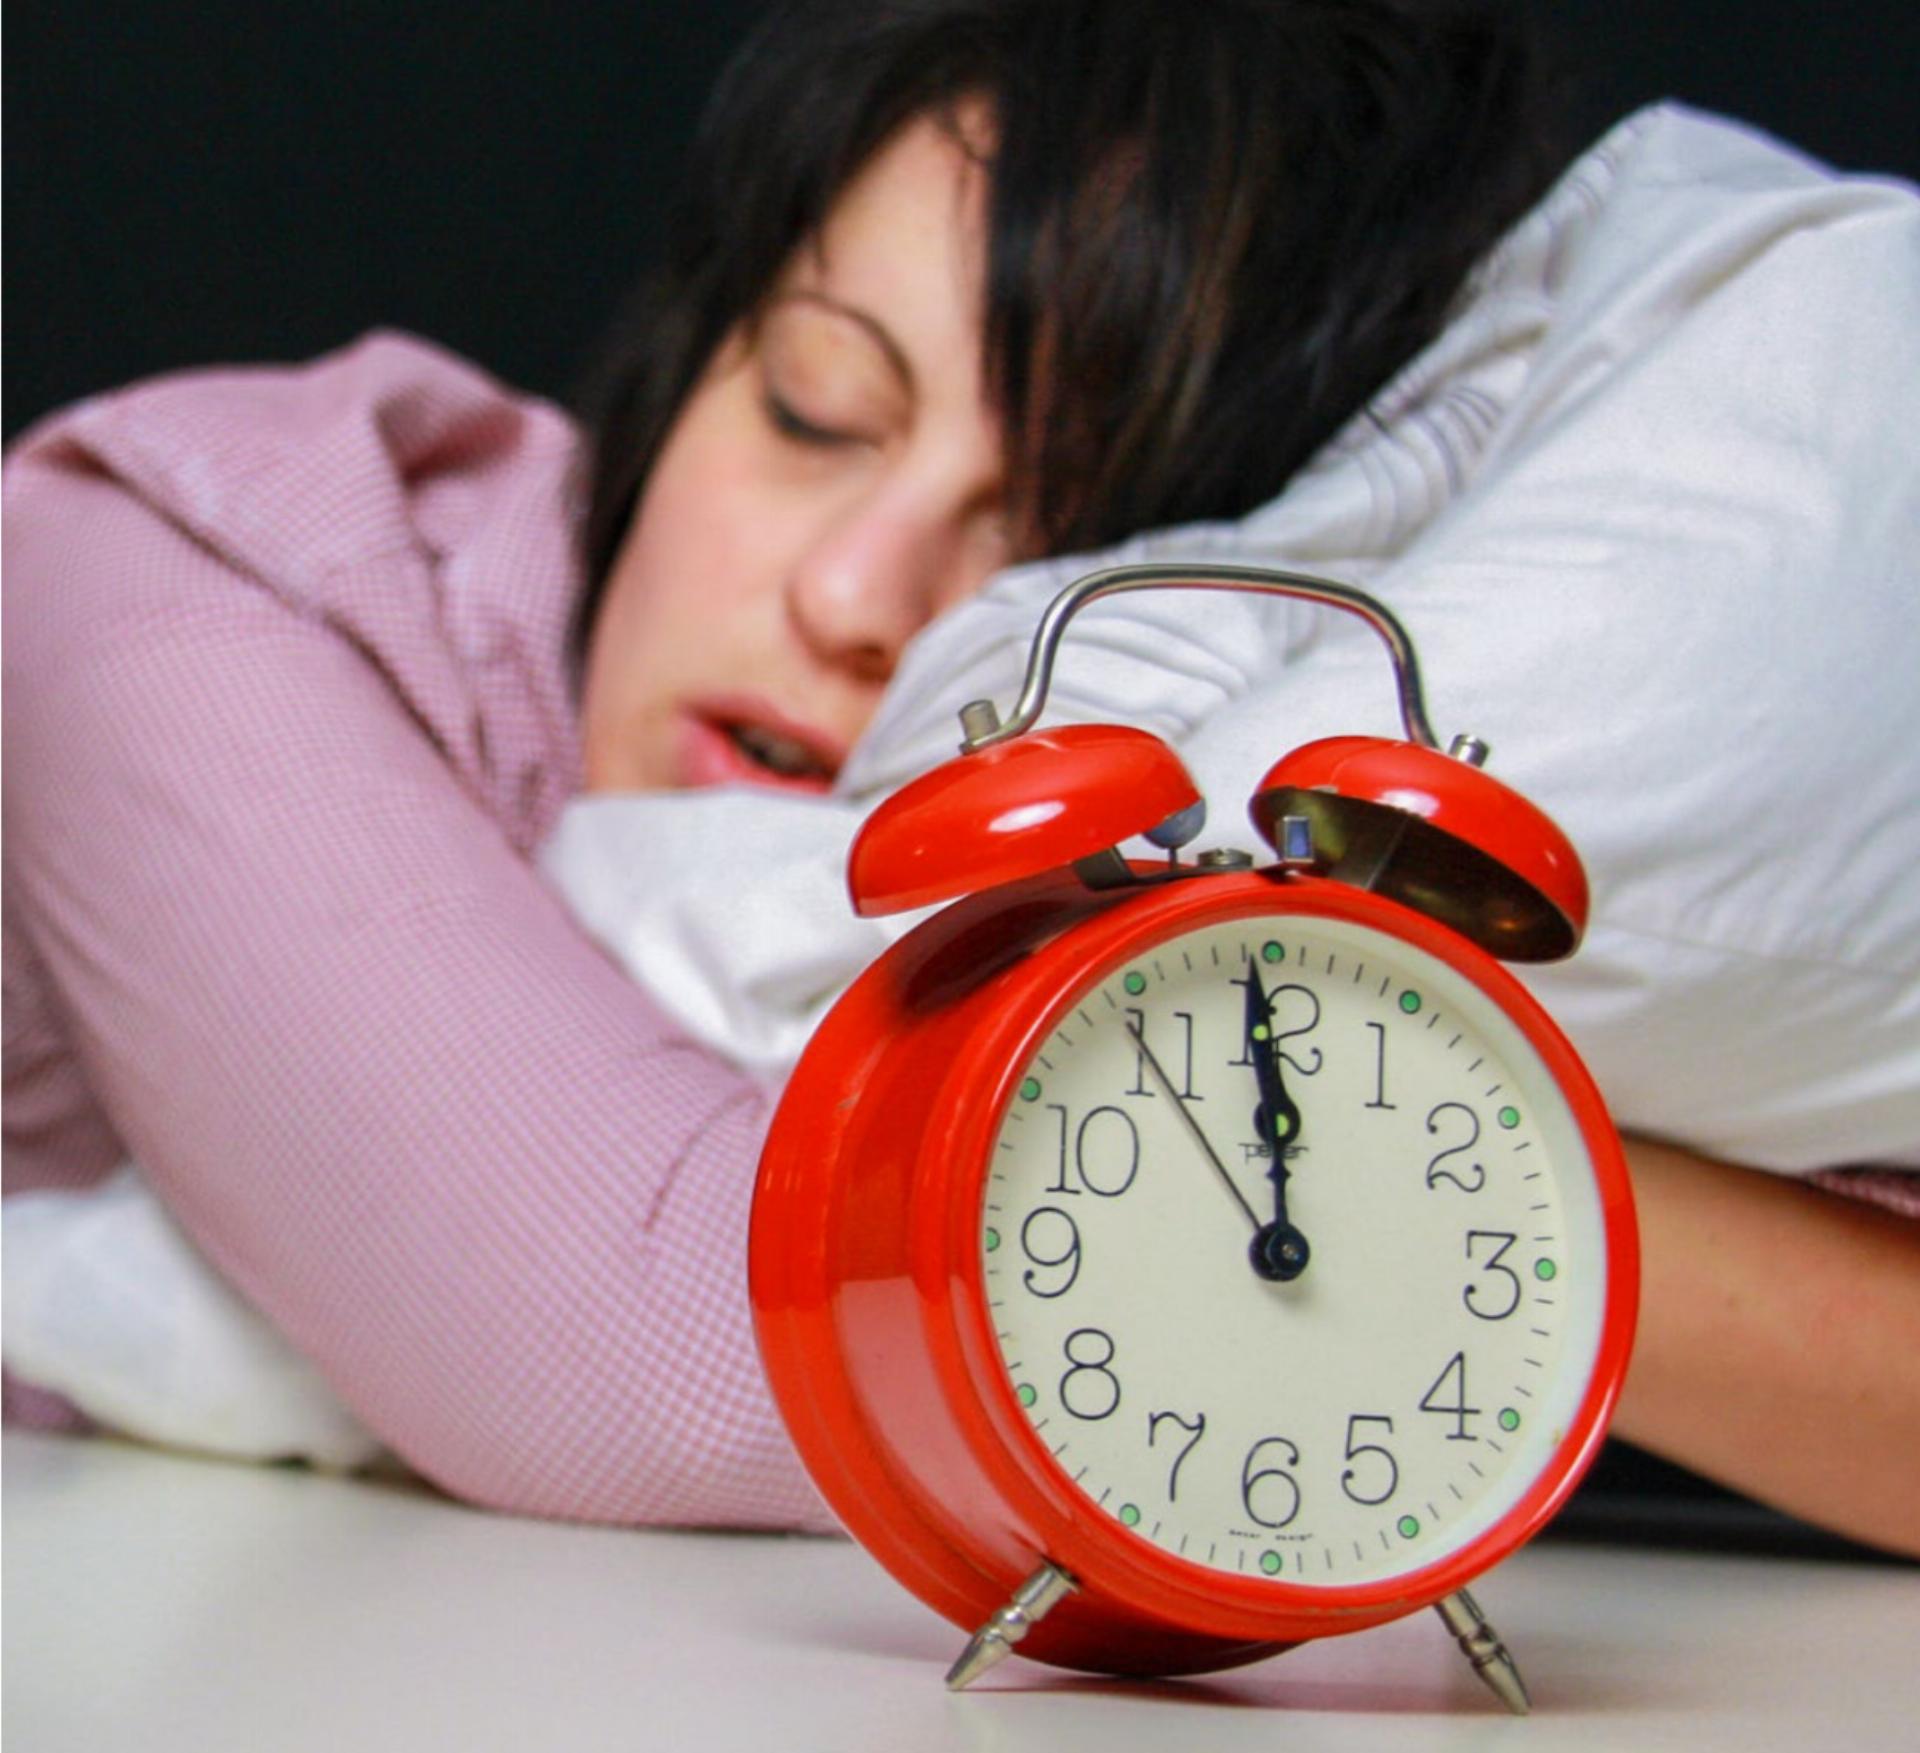 Wichtiger als der Zeitpunkt des Einschlafens ist die Qualität der Nachtruhe. BILD: SEBASTIAN THANNER / STOCK.ADOBE.COM